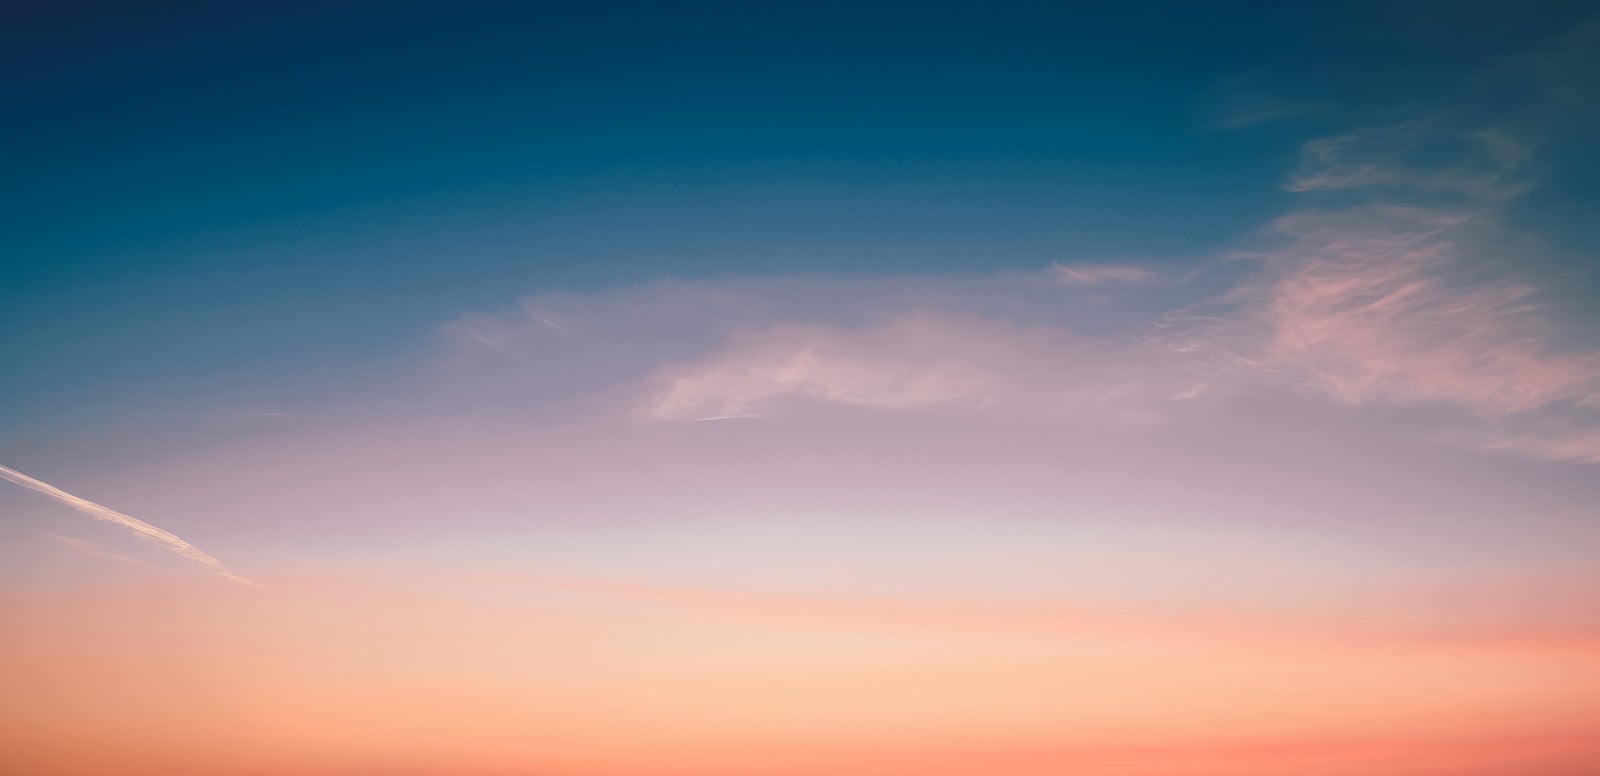 「柔らかな色調で描かれた夕焼けの空」の写真